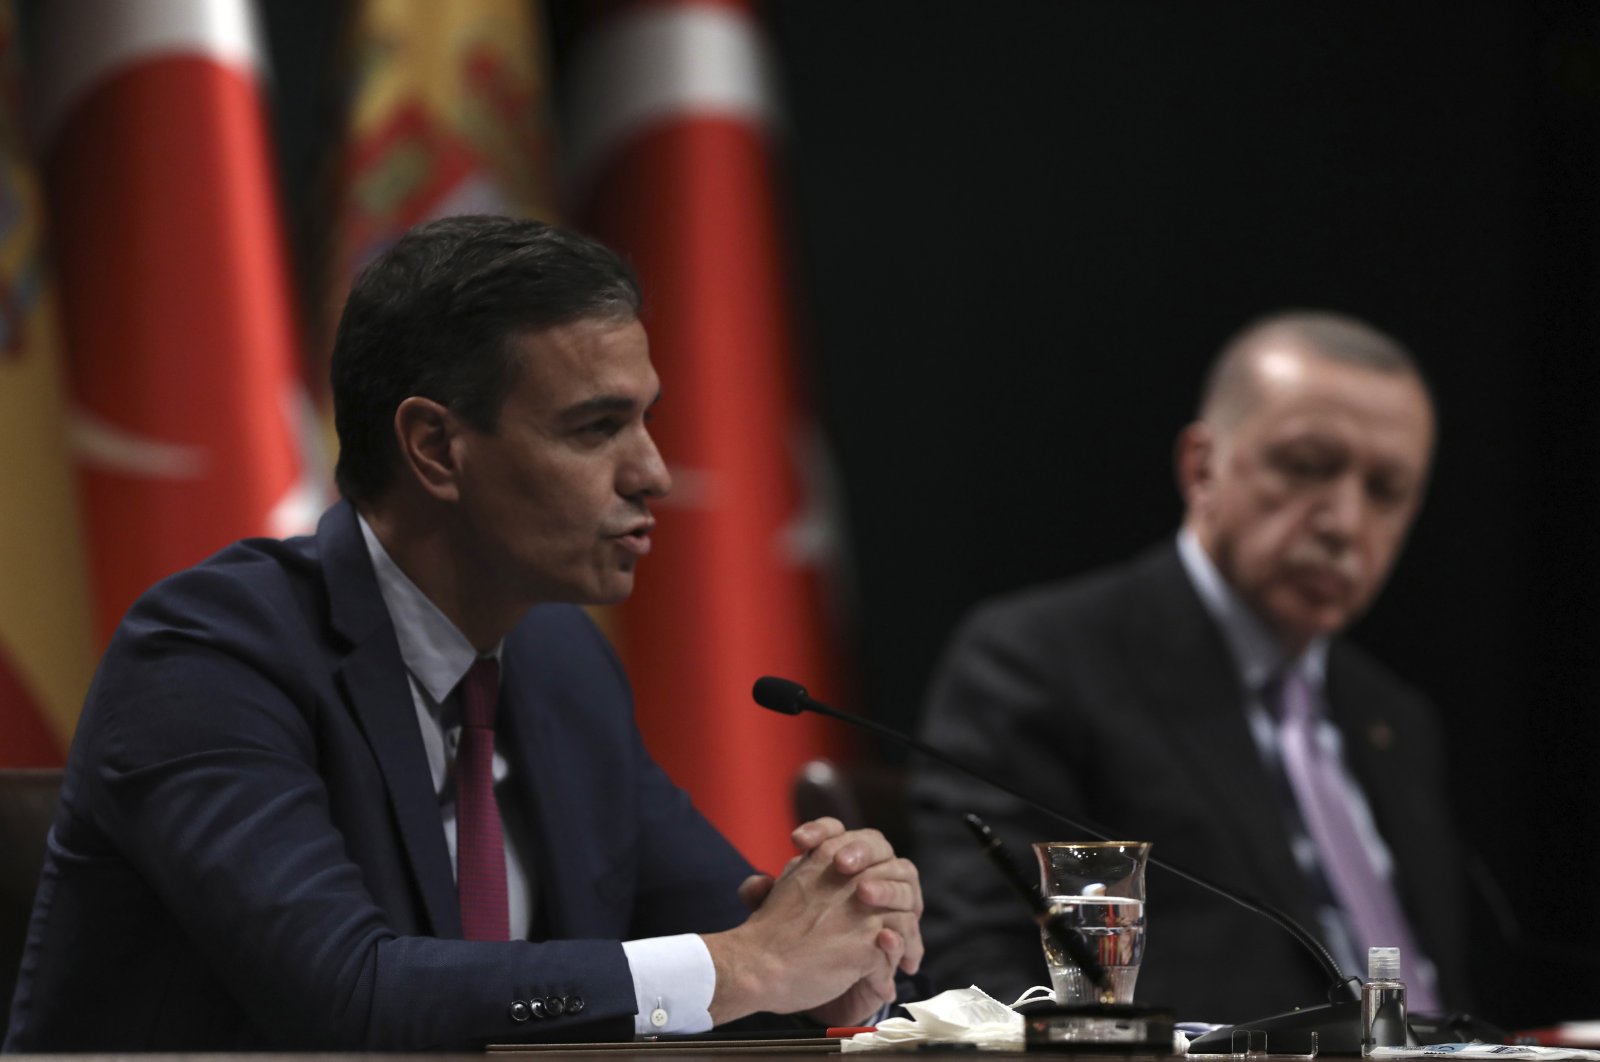 Türkiye y España esperan fortalecer su asociación con la visita de Erdoğan